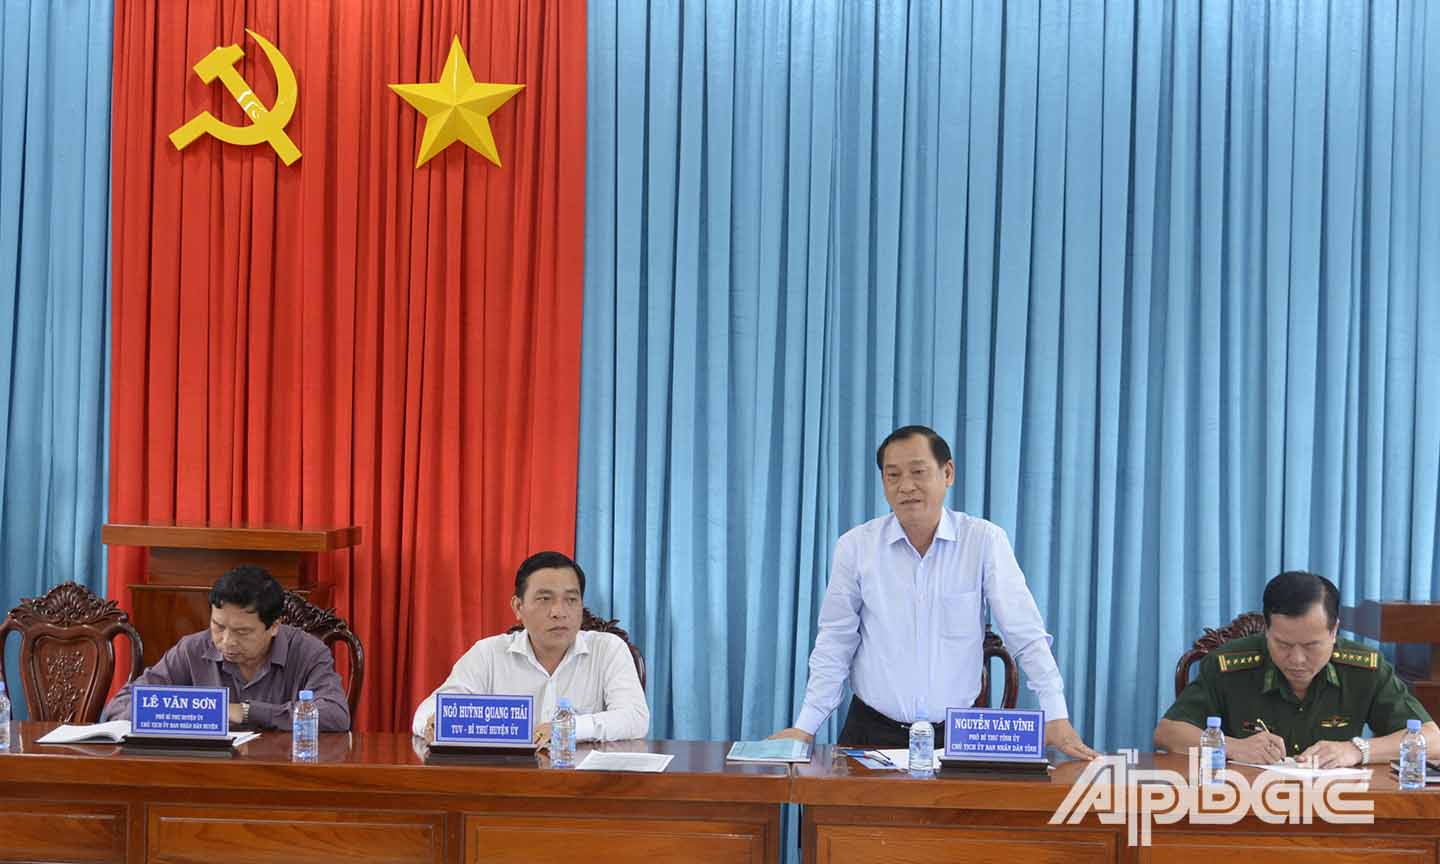 Đồng chí Nguyễn Văn Vĩnh phát biểu trong buổi làm việc.